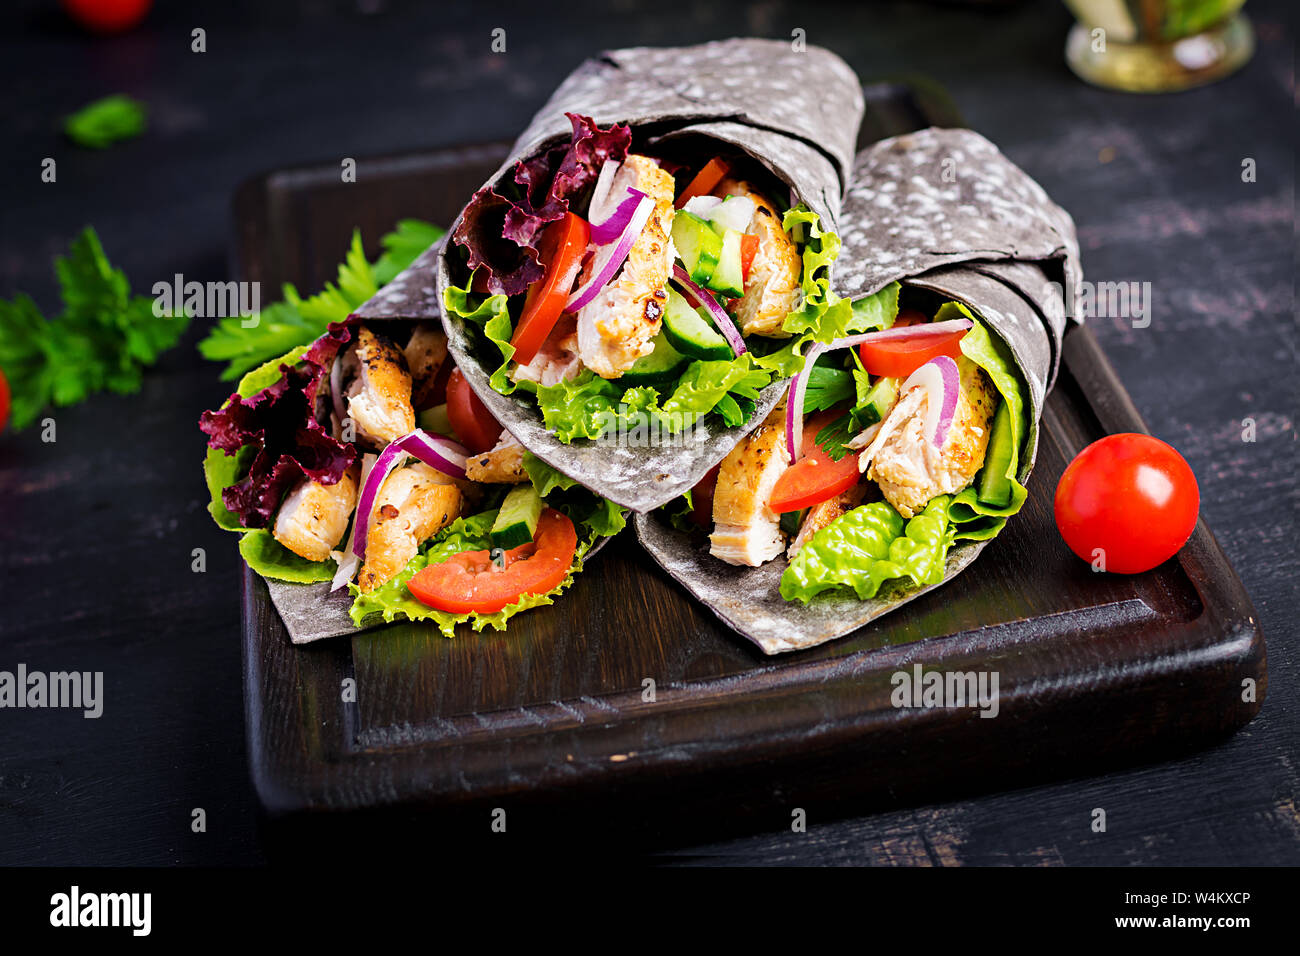 Tortilla mit Tinte Tintenfisch Wraps mit Hähnchen und Gemüse auf schwarzem Hintergrund. Chicken burrito, mexikanisches Essen. Stockfoto